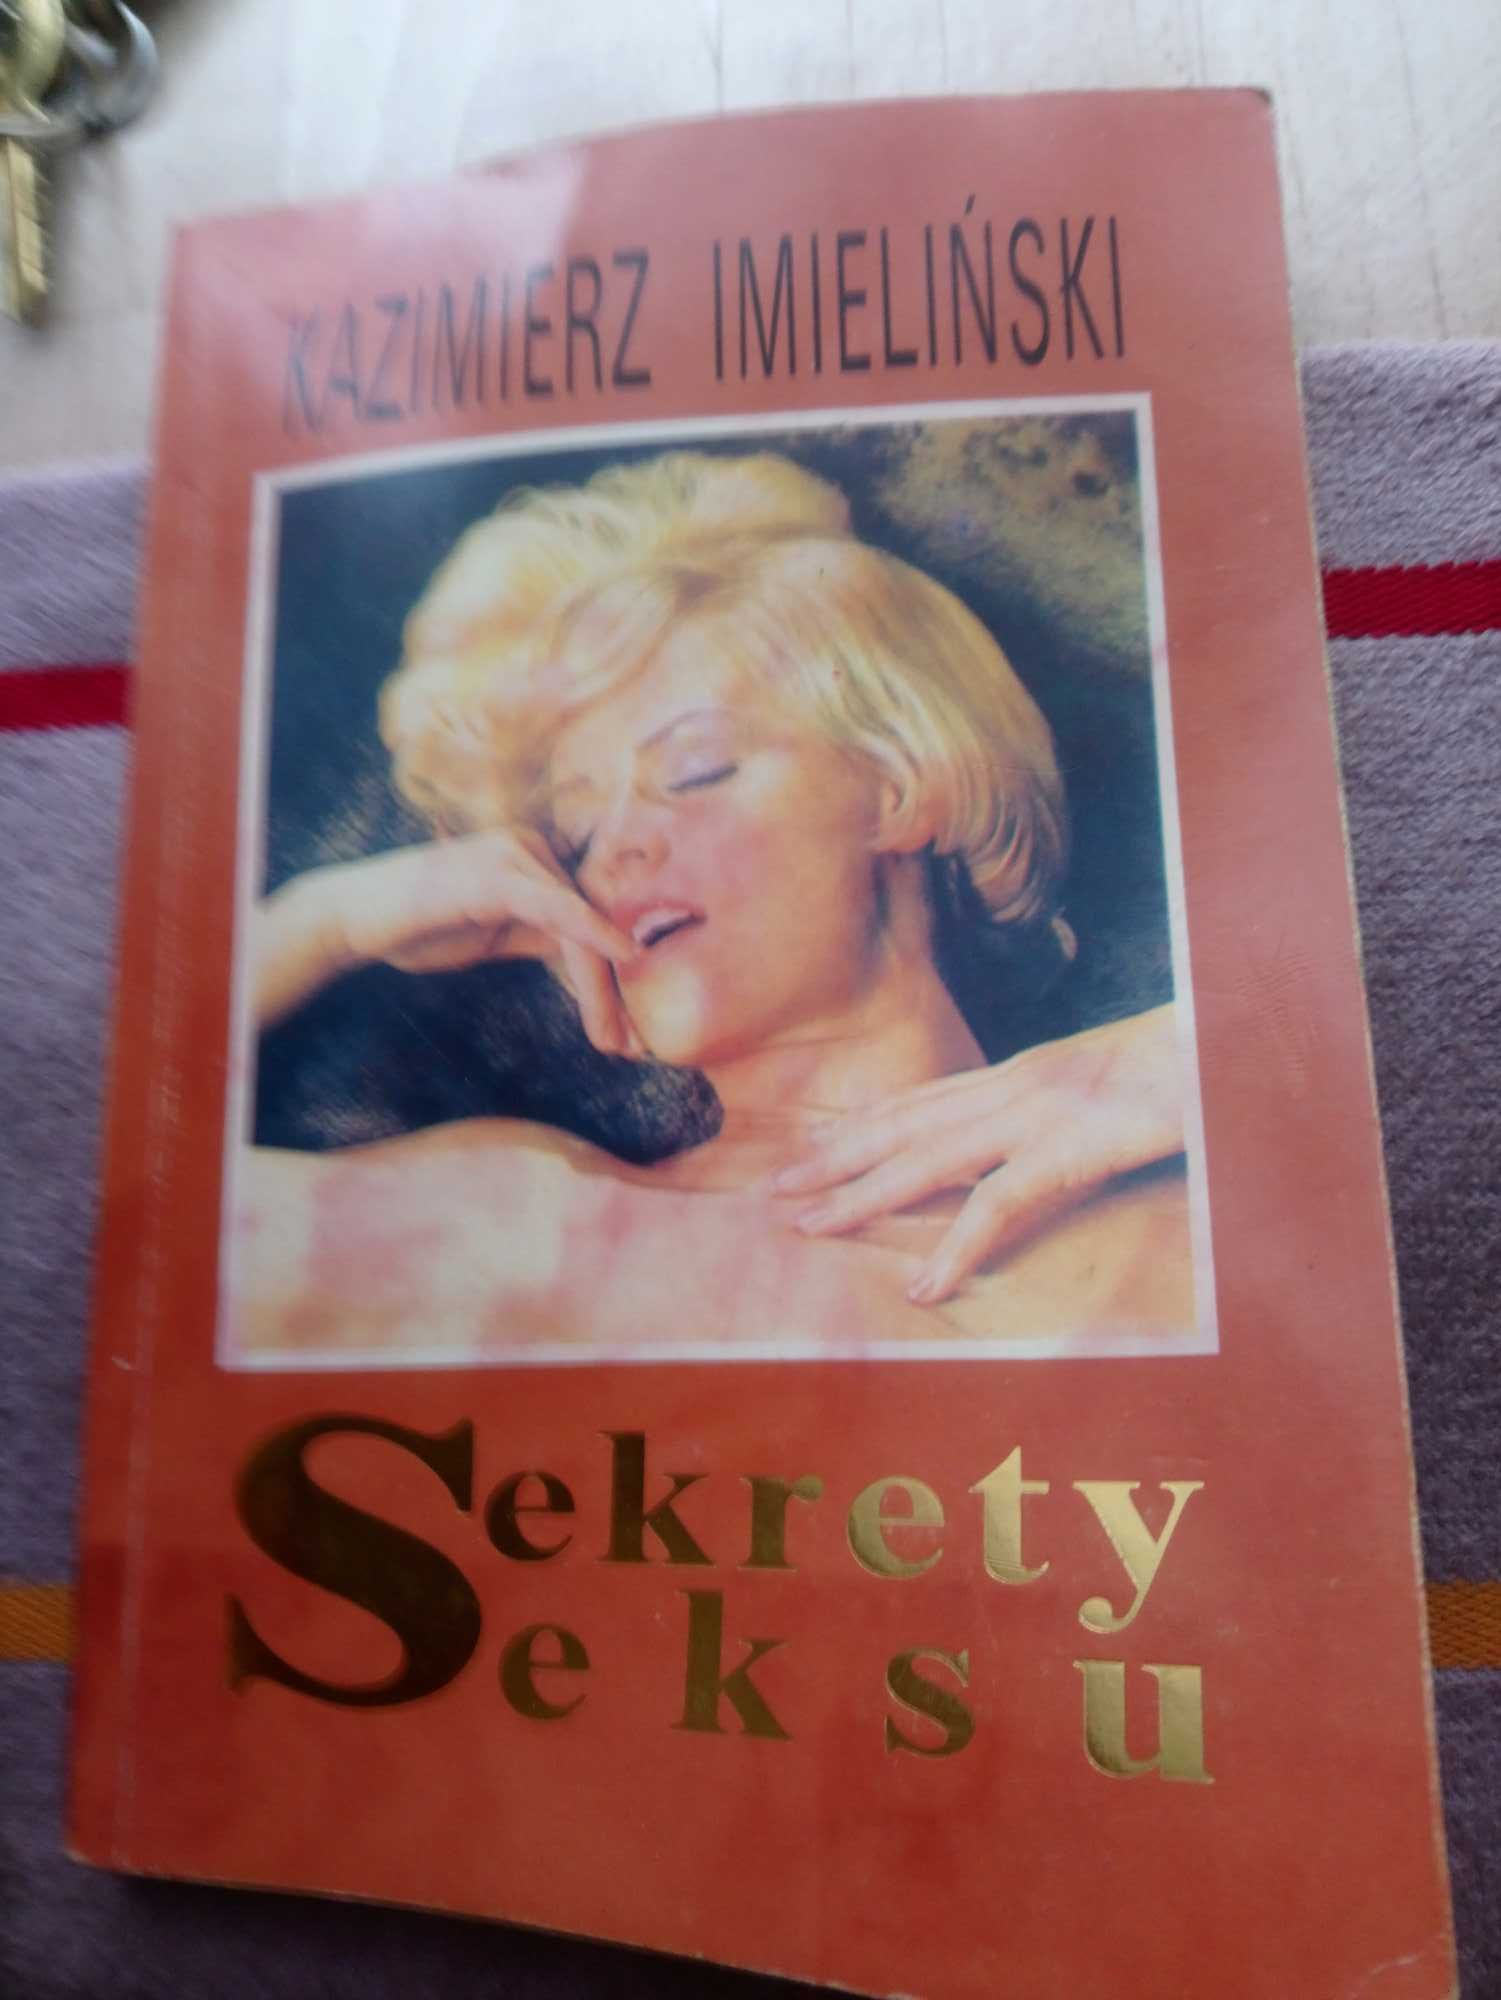 Sekrety seksu Kazimierz Imieliński